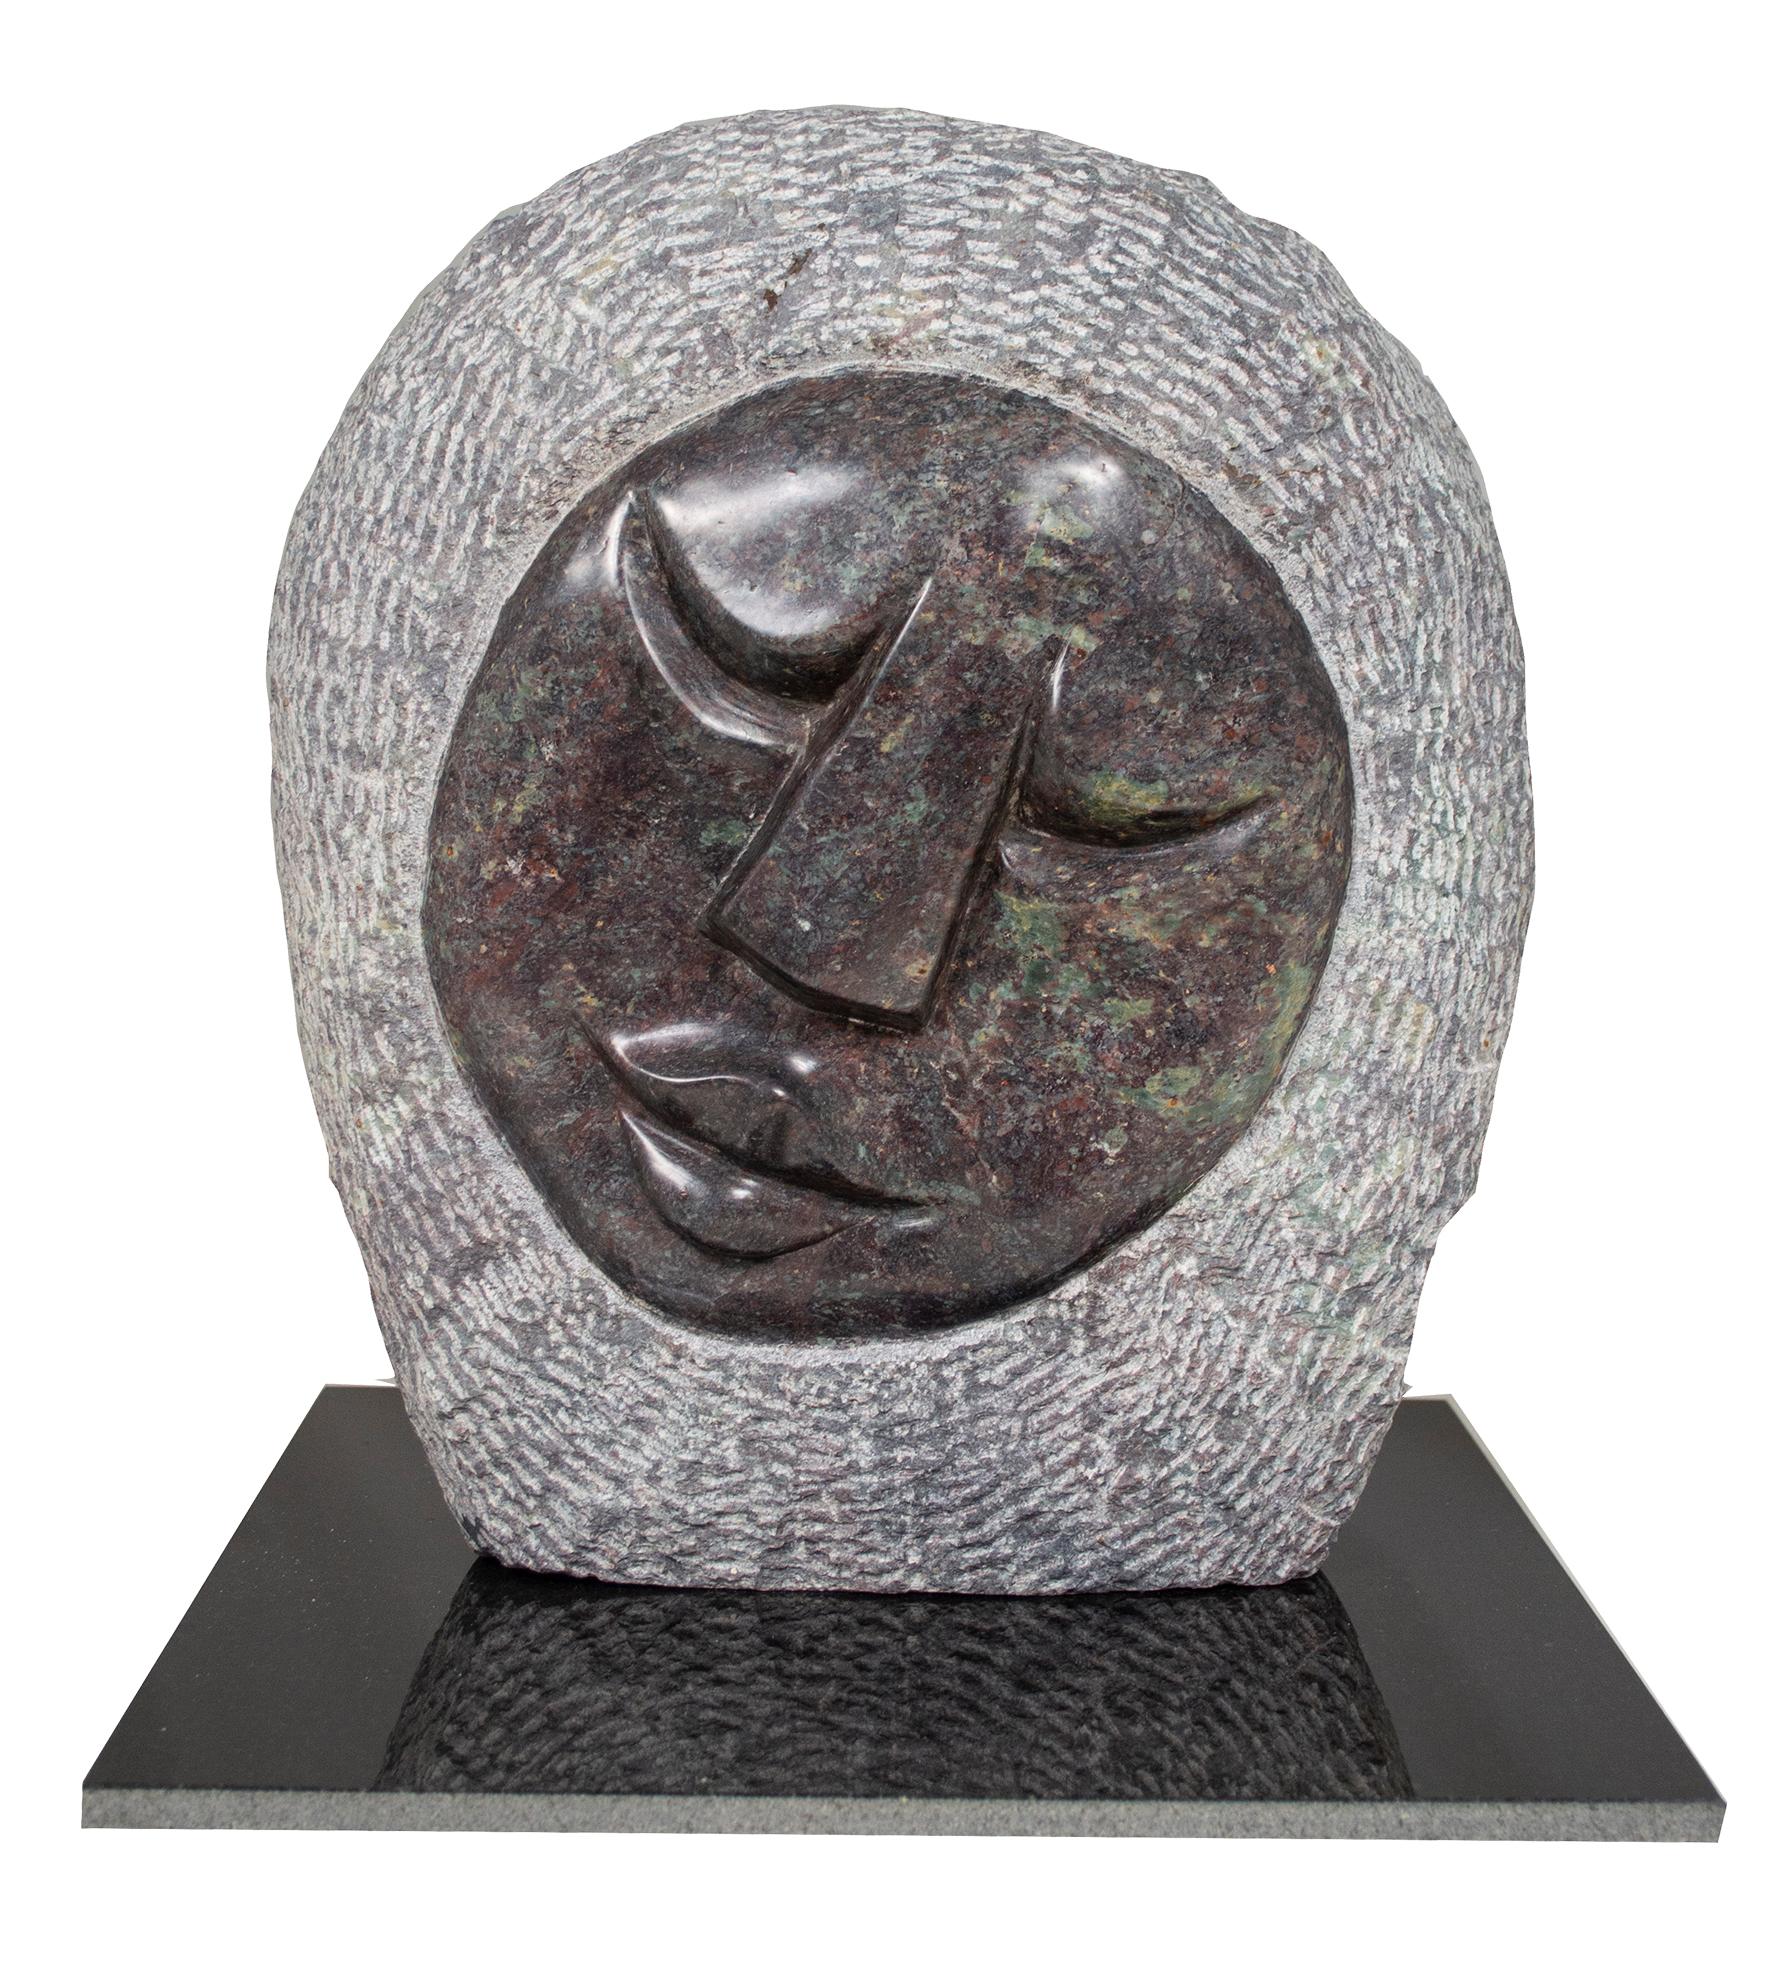 Face" ist eine Original-Kobalt-Skulptur des simbabwischen Künstlers Obert Mukumbi. Diese Skulptur zeigt den Einfluss des Künstlers auf die große Shona-Bildhauerin Coleen Madamombe, die für ihre Skulpturen von Frauen mit runden Gesichtern und